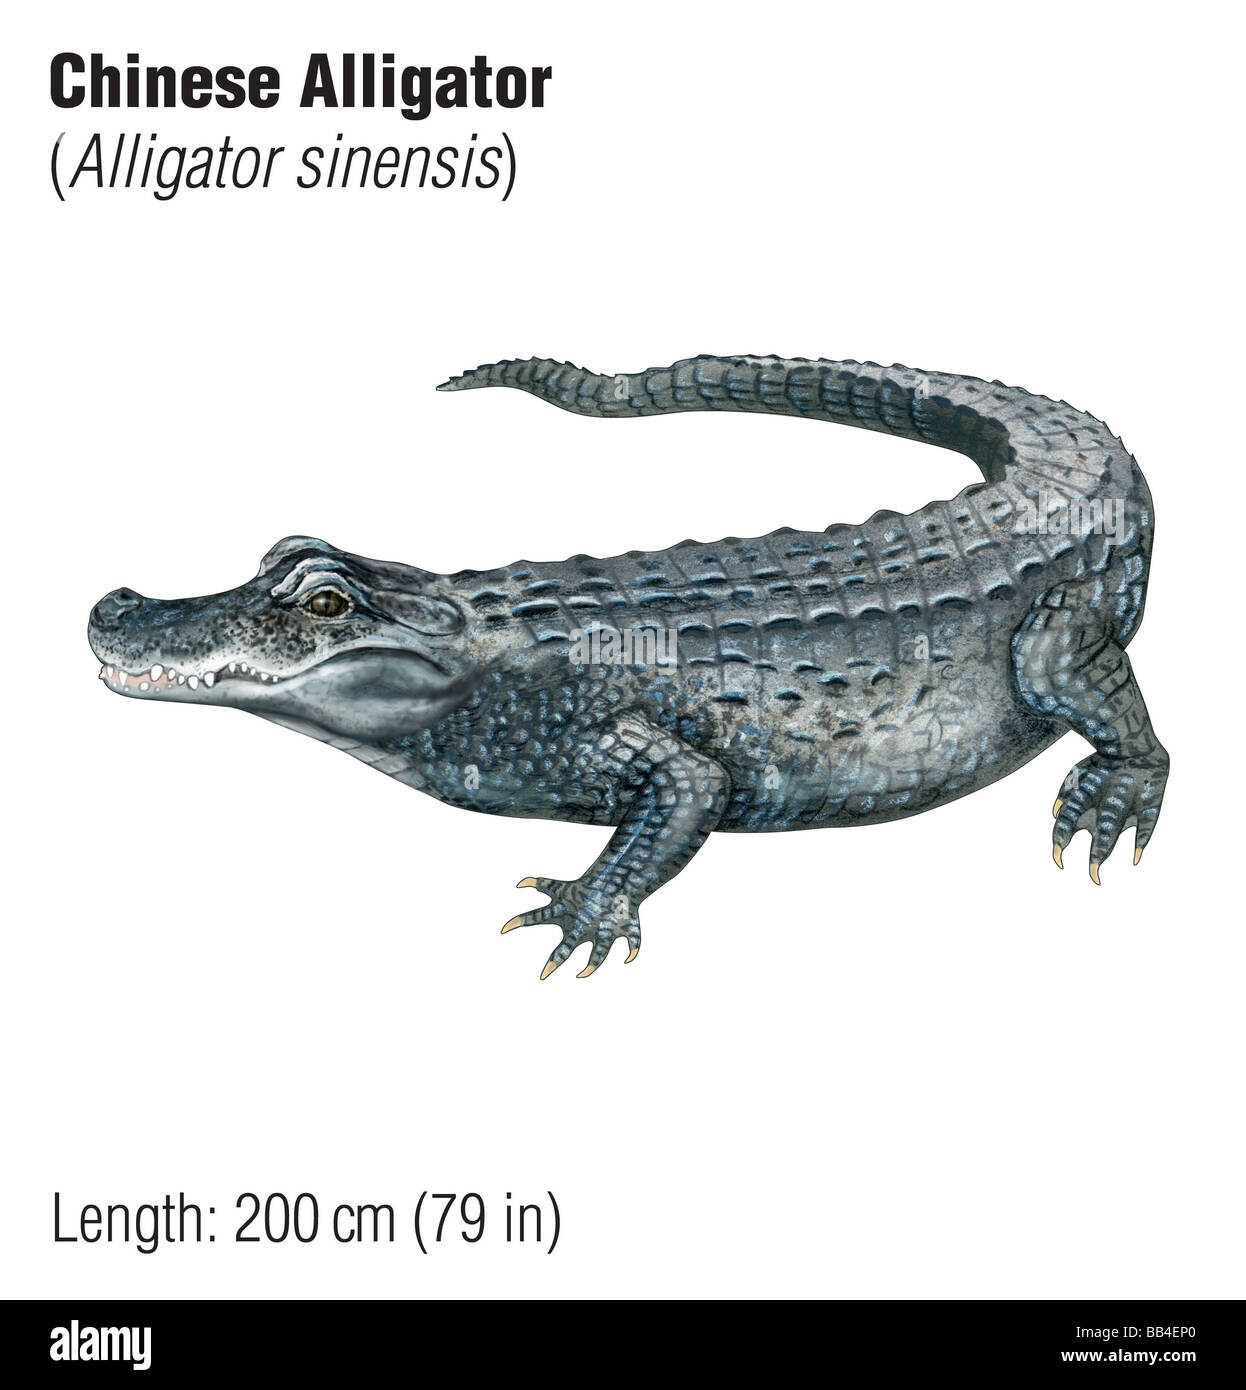 Cocodrilo chino (Alligator sinensis), una especie en peligro de extinción. Foto de stock